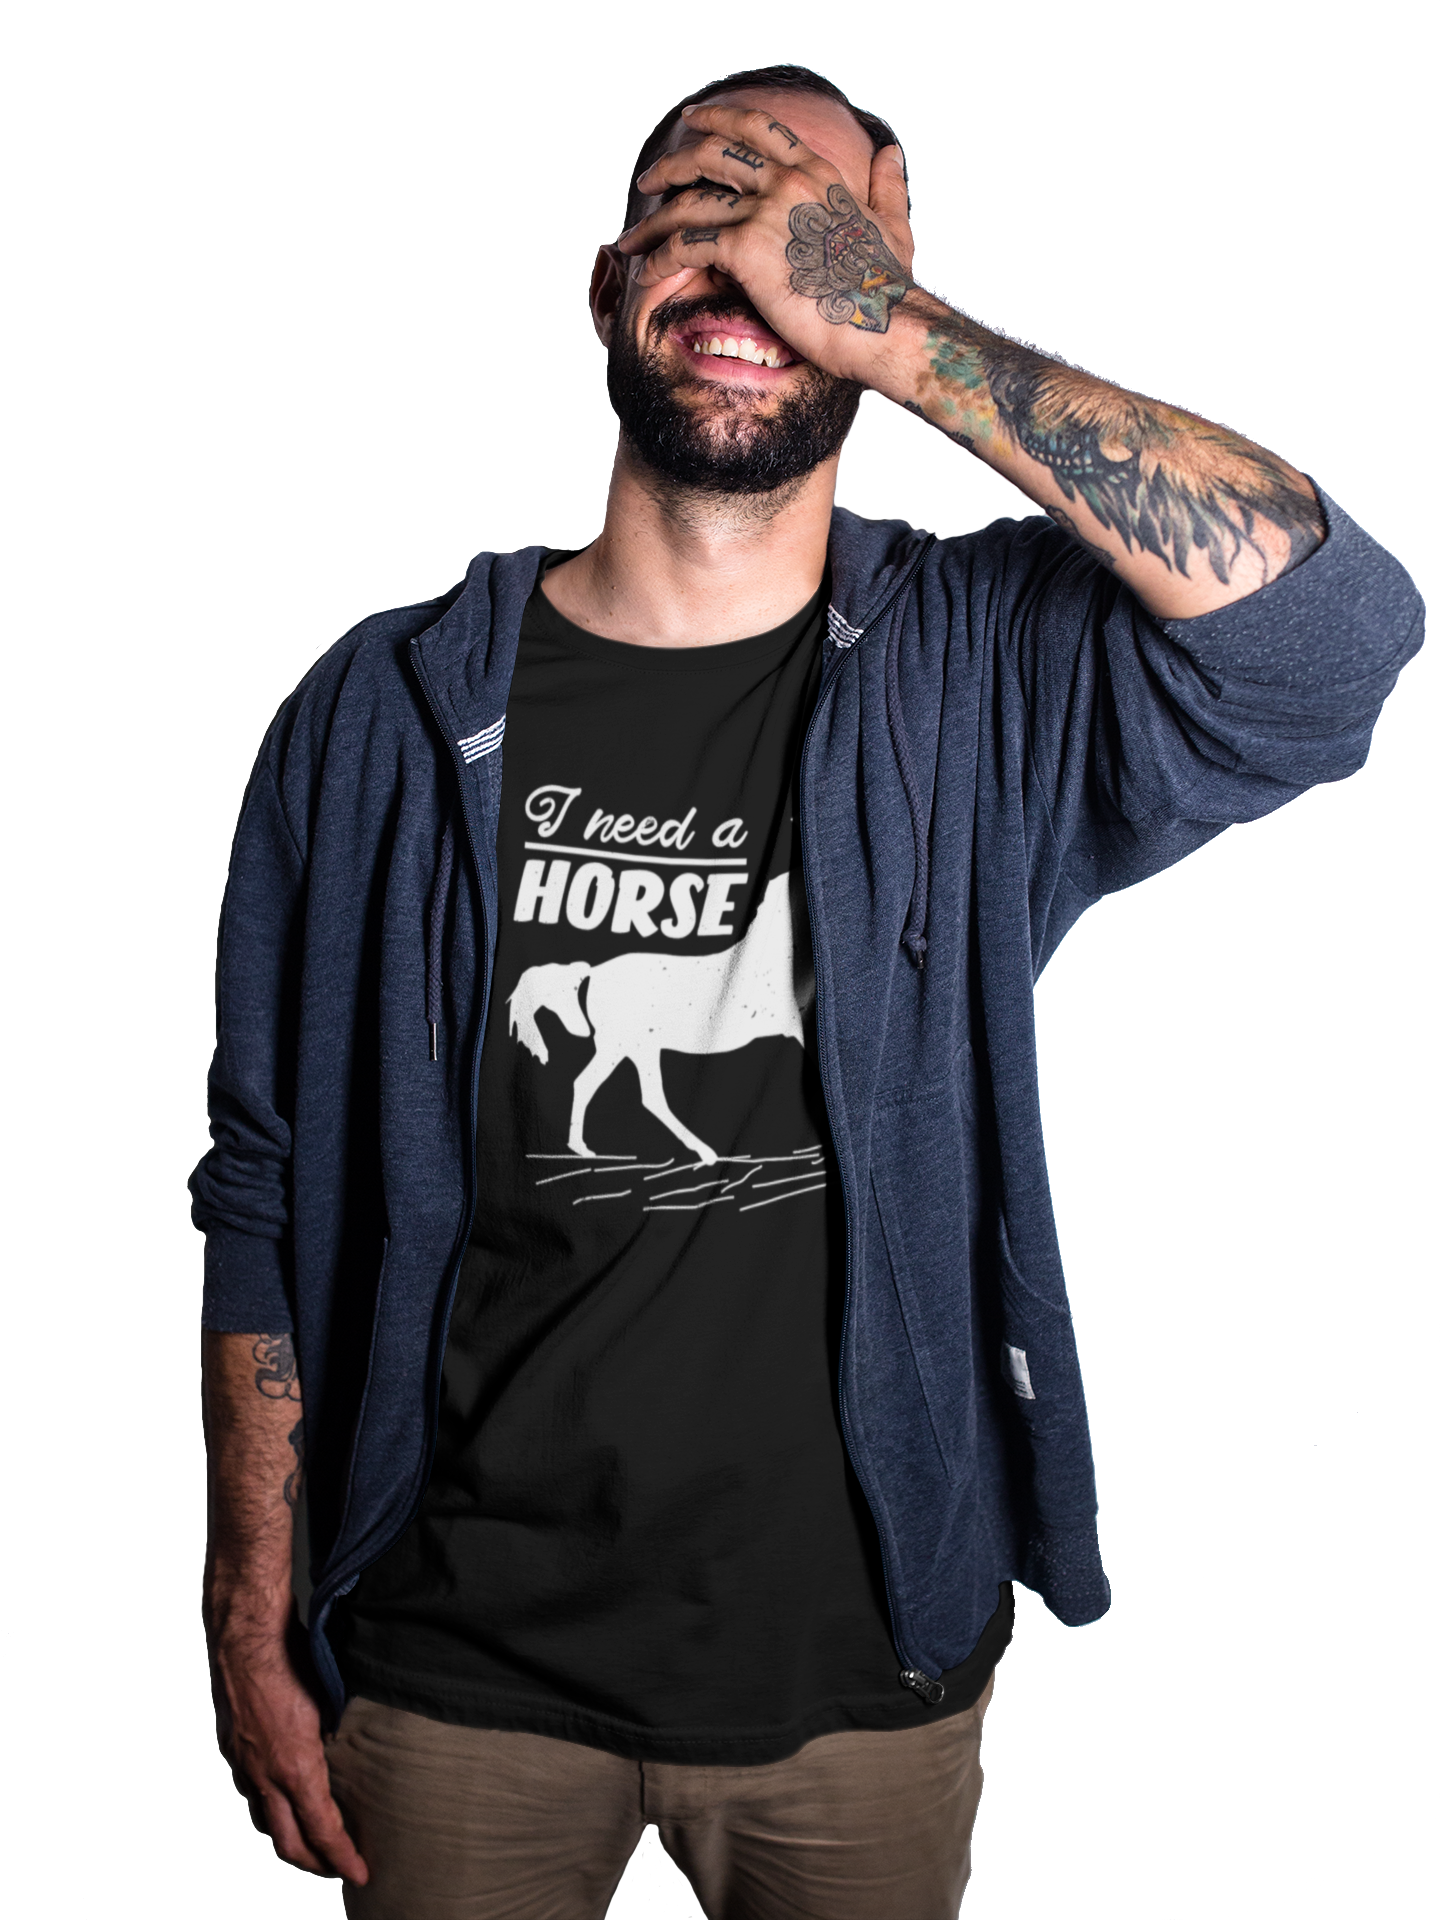 TNH - Men's Round Neck Tshirt - I Need a Horse